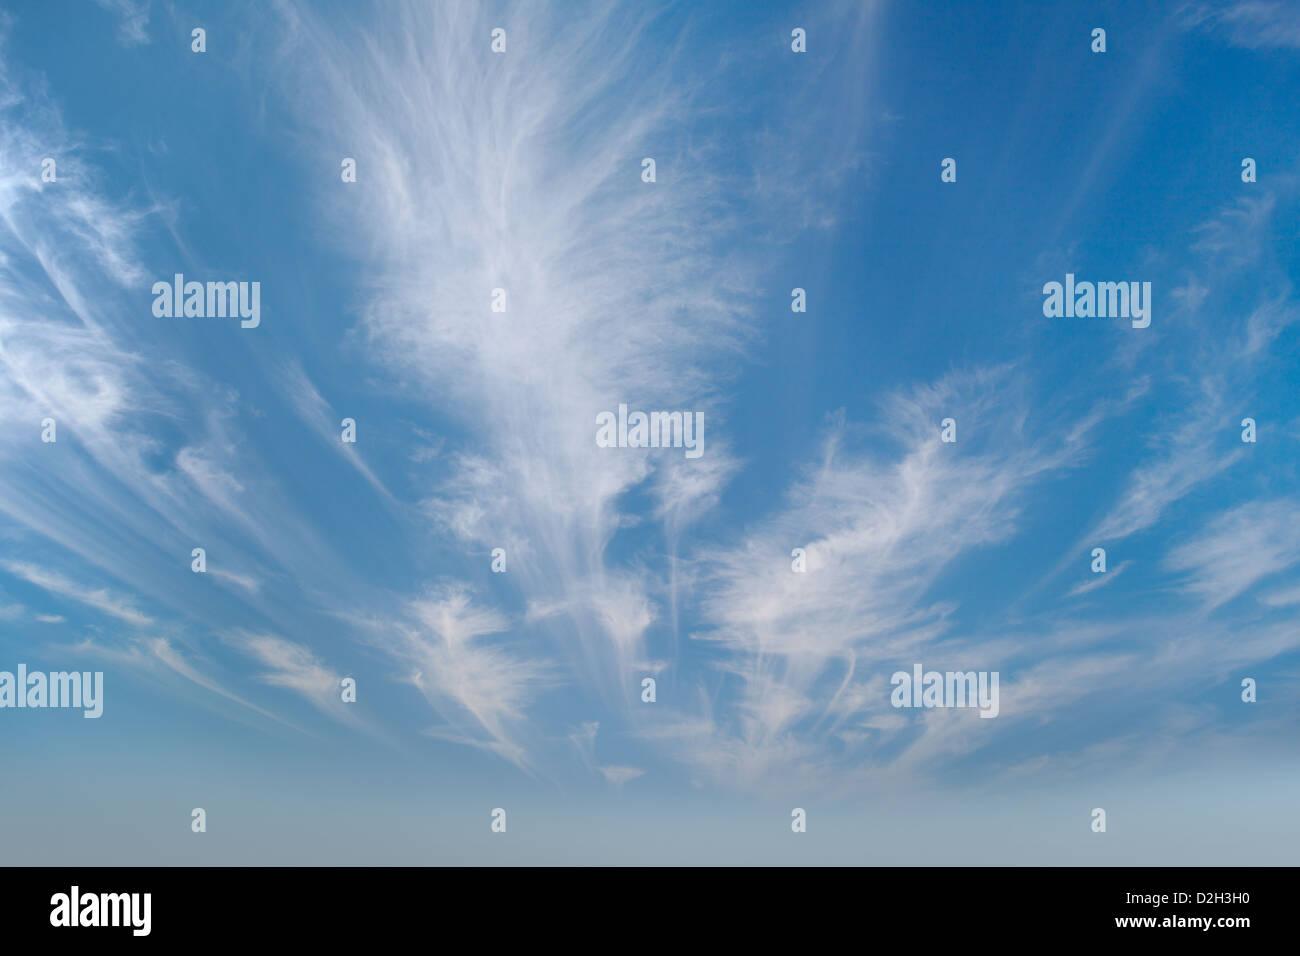 Beau ciel avec nuages cirrus photographié par un grand angle Banque D'Images